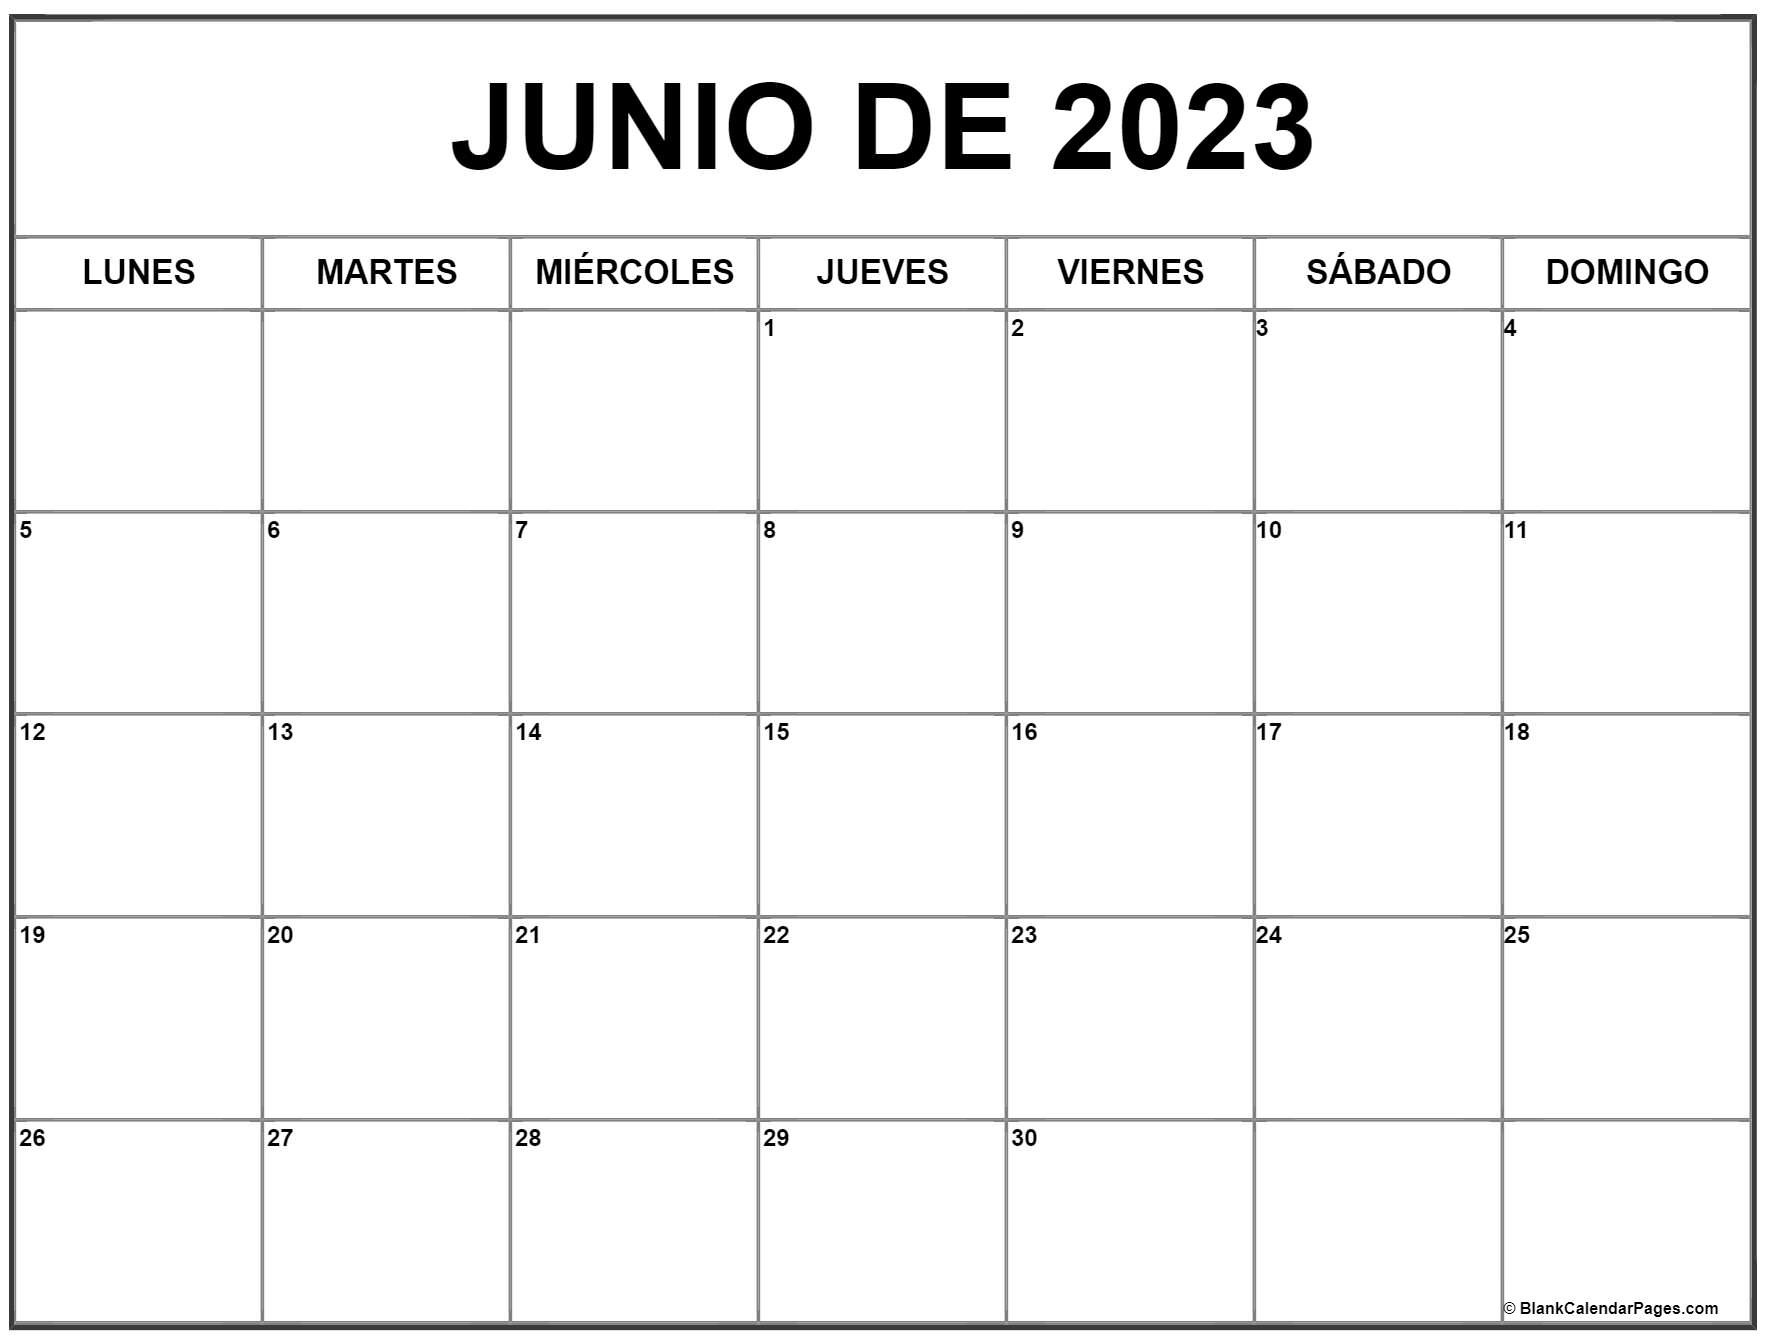 Calendario Mayo Y Junio junio de 2023 calendario gratis | Calendario junio